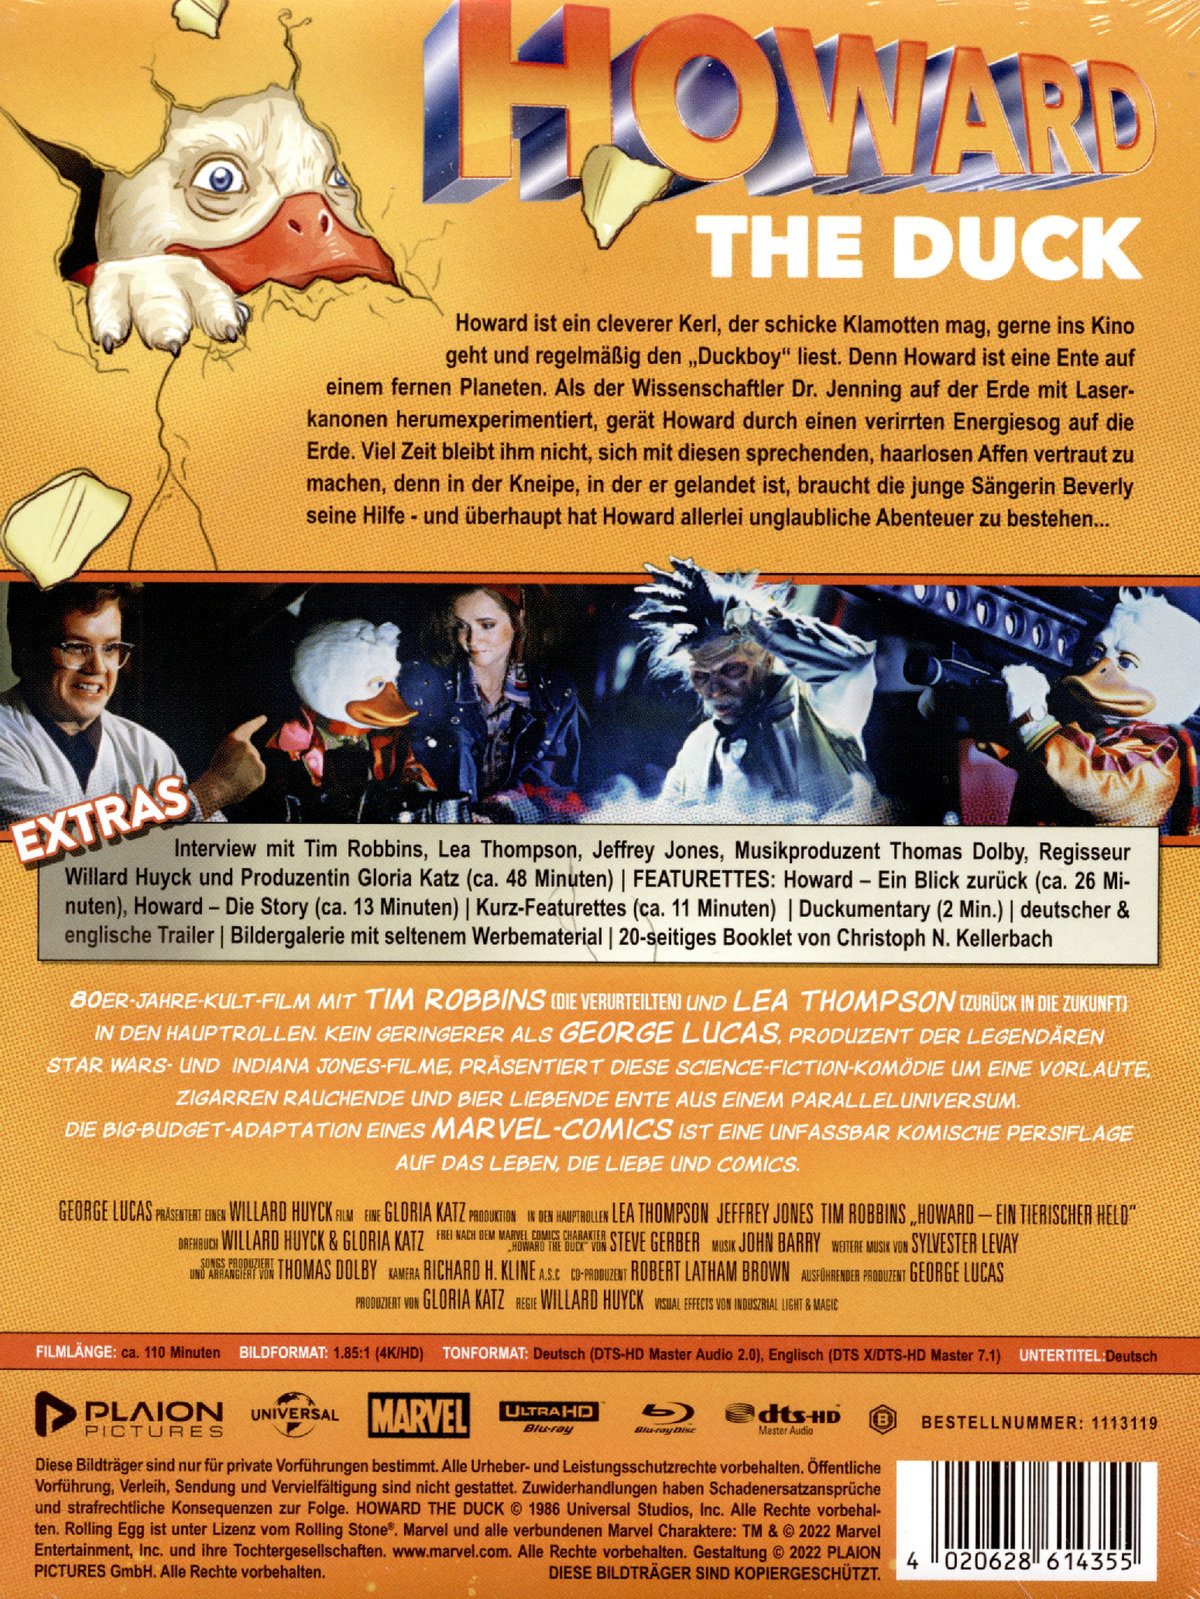 Howard the Duck - Ein tierischer Held - Uncut Mediabook Edition (4K Ultra HD+blu-ray)